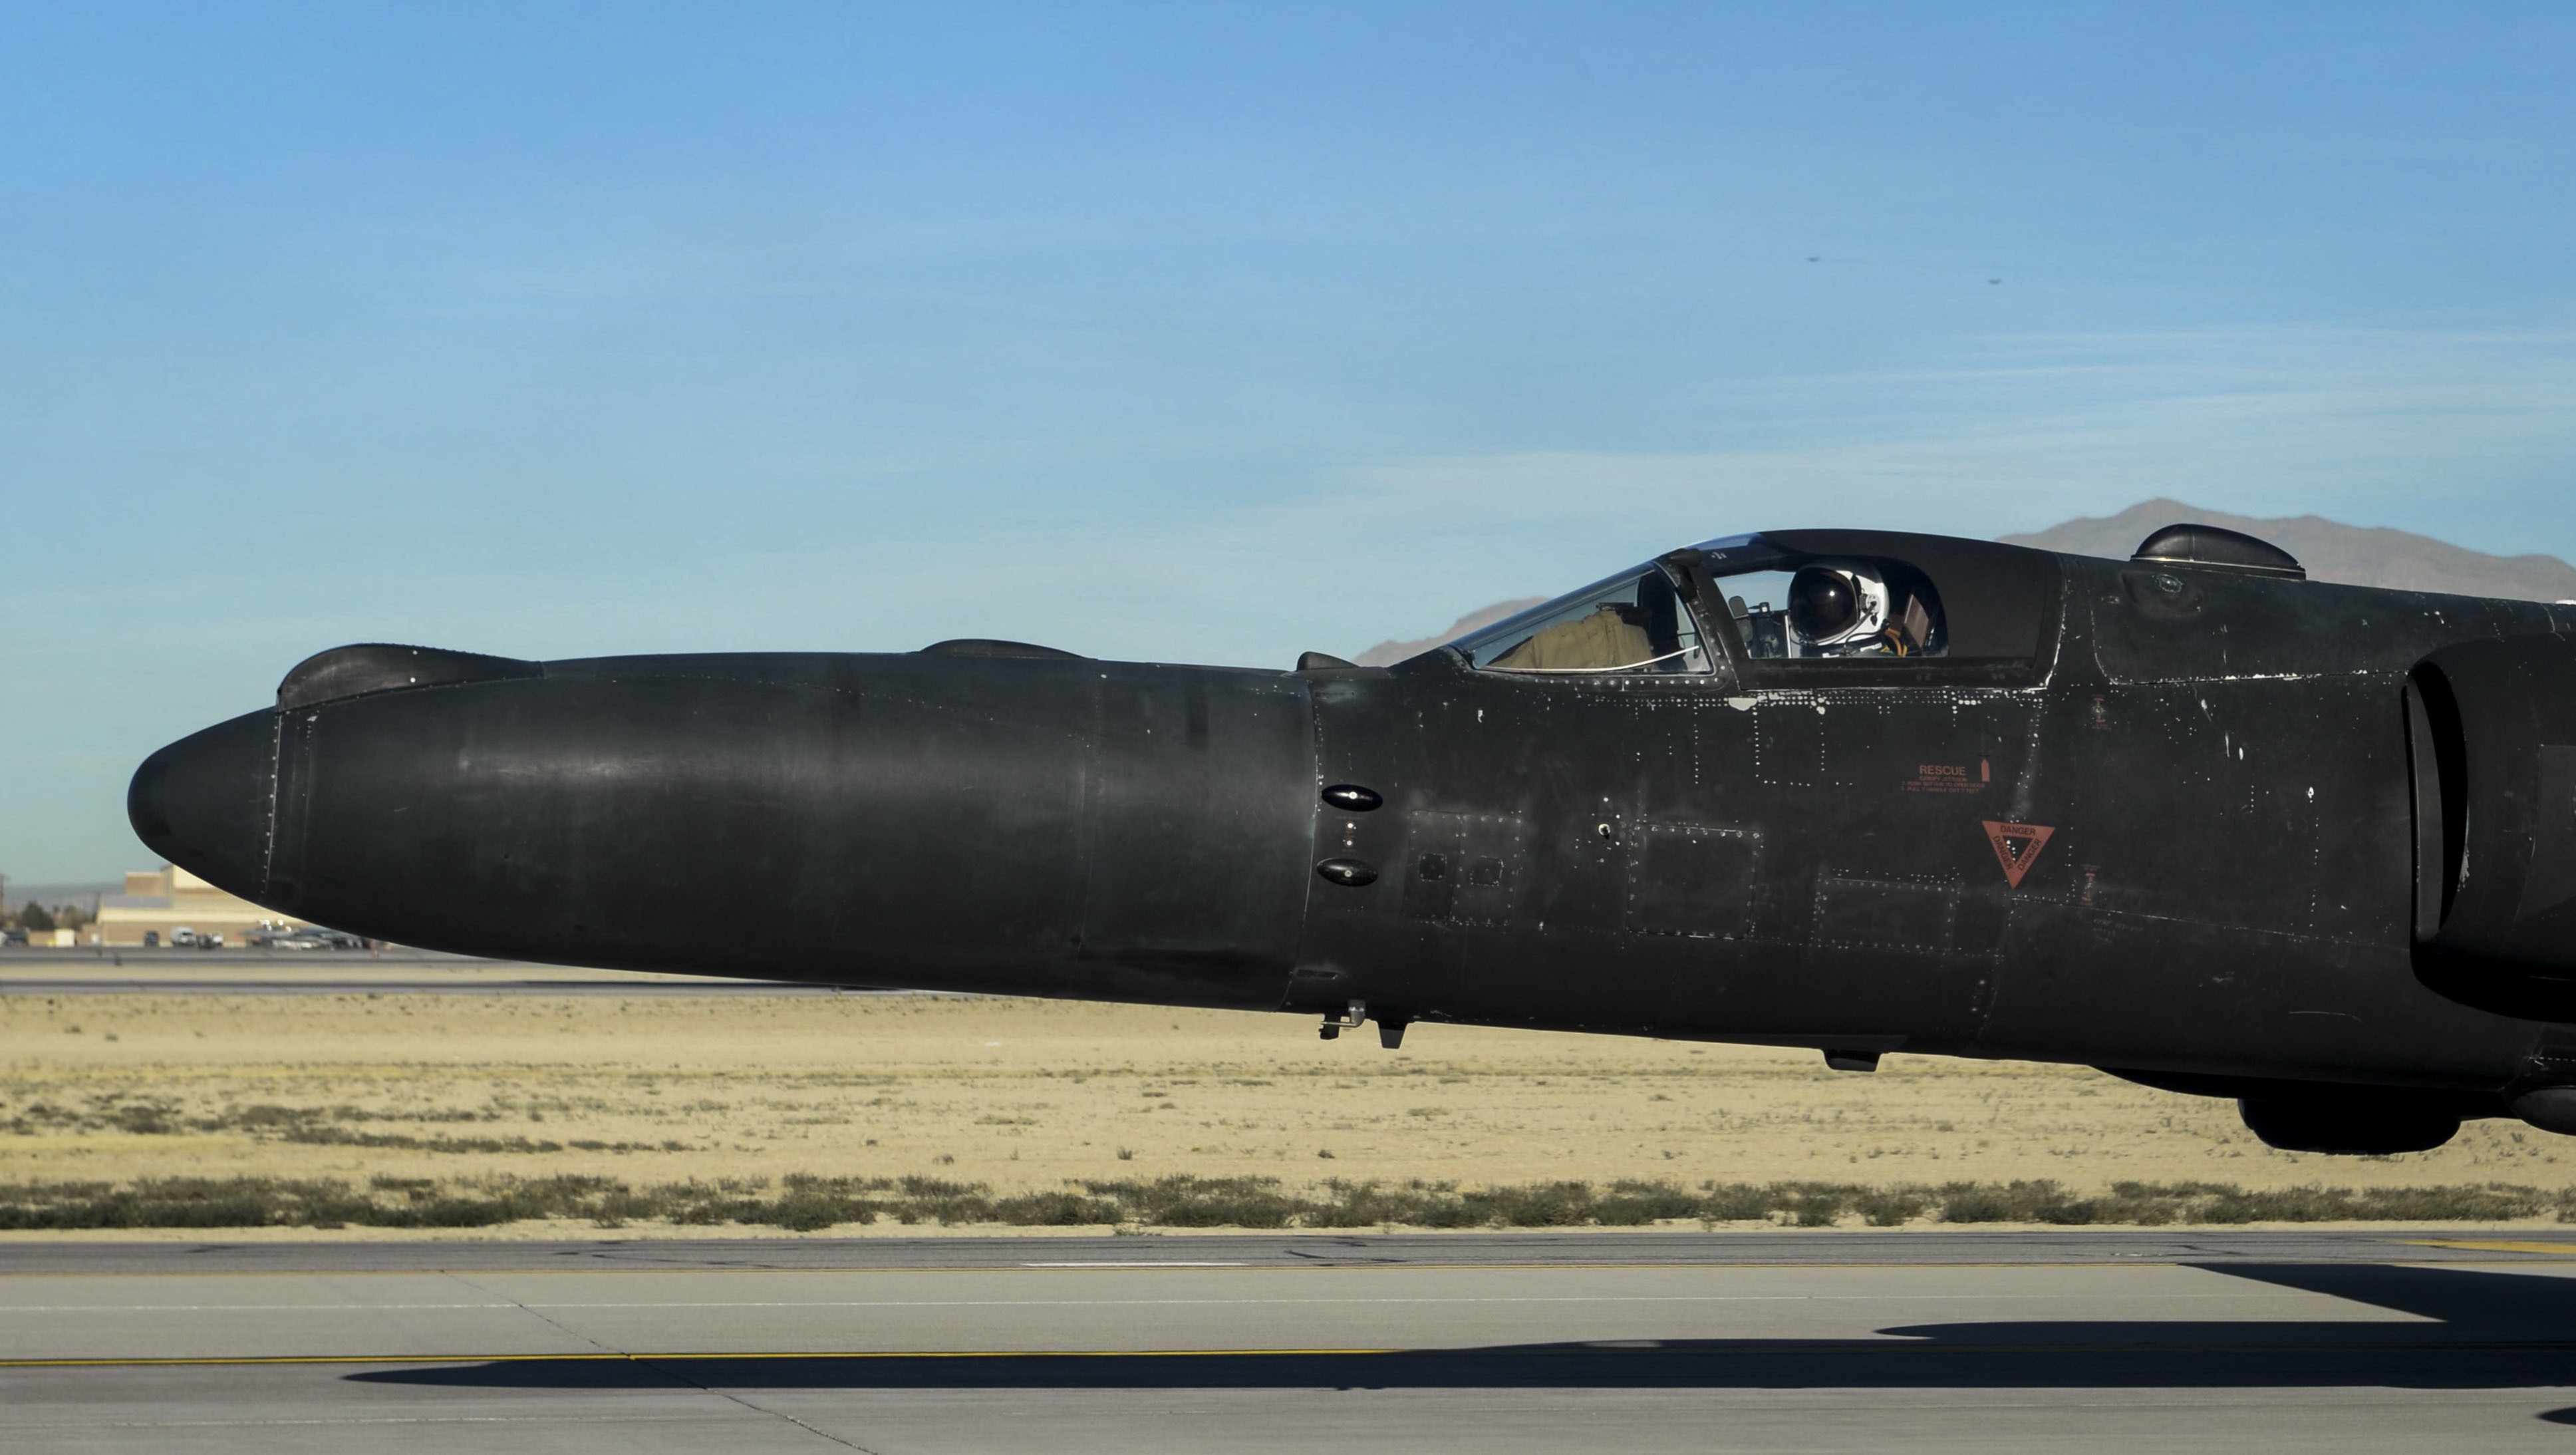 Так теперь выгладит носовая часть вечно молодого  Lockheed U-2 Dragon Lady, фото сделано 12 декабря 2018 года на АБ Nellis, шт. Невада